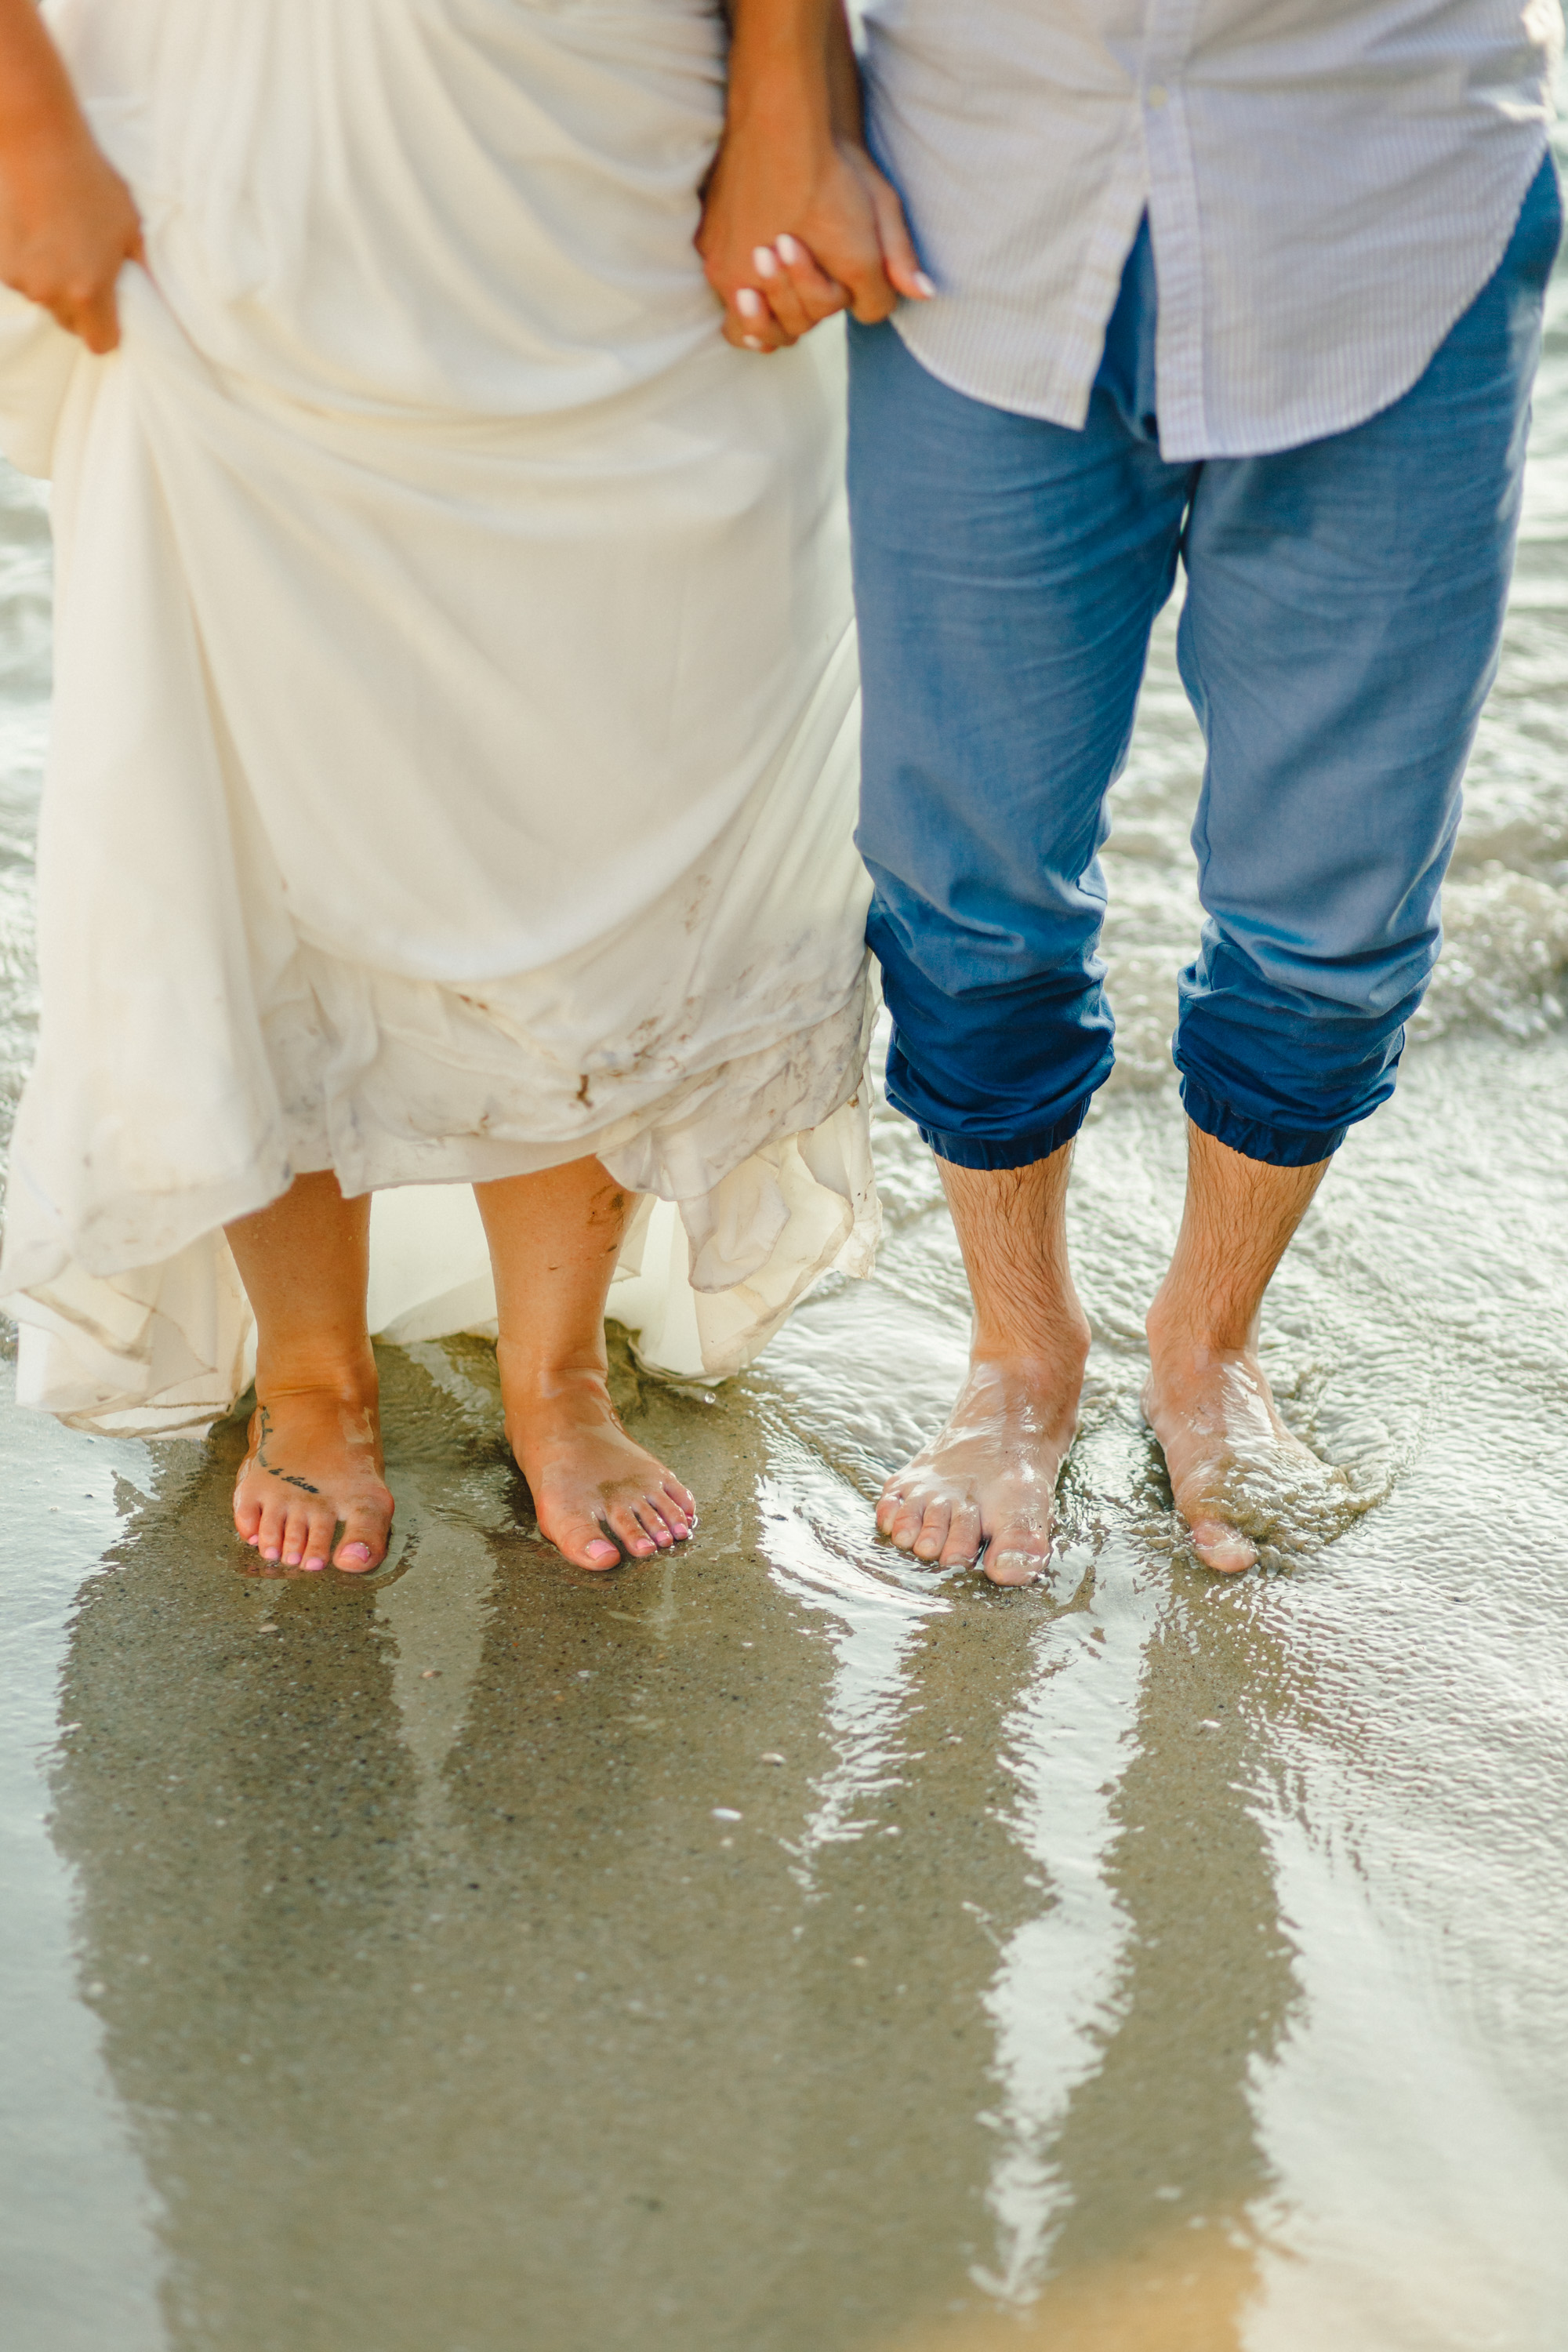 Salou, Spain Beach Wedding - Buenasphotos -- Wedding Blog - The Overwhelmed Bride